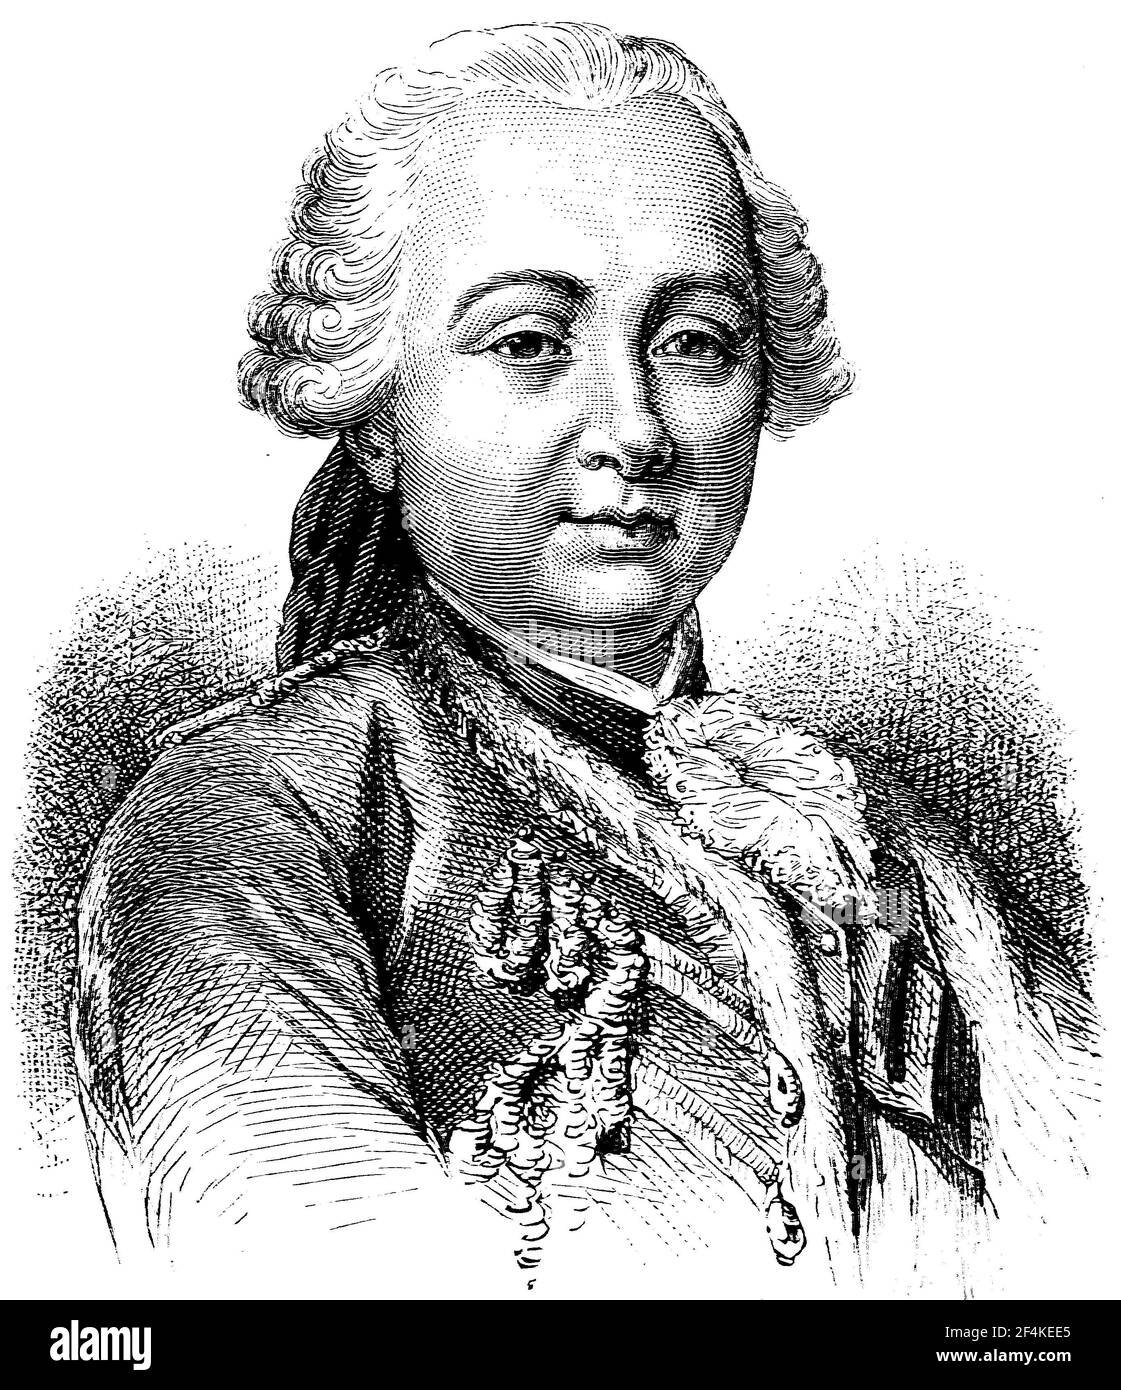 Etienne-Francois de Choiseul, 28 giugno 1719 - 8 maggio 1785, fu Marchese de Removille, Seigneur de Chanteloup, Marchese de Stainville (dal 1770), Duc de Choiseul-Stainville e coppia di Francia (dal 1758), e Duca di Choiseul, Duca di Amboise, coppia di Francia (dal 1764), E uno statista francese di spicco durante l'Ancien Régime / Etienne-Francois de Choiseul, 28. Giugno 1719 - 8. 1785, War Marquis de Removille, Seigneur de Chanteloup, Marquis de Stainville (seit 1770), Duc de Choiseul-Stainville und Pair von Frankreich (seit 1758) sowie Herzog von Choiseul, Herzog von Amboise, Pair von Fran Foto Stock